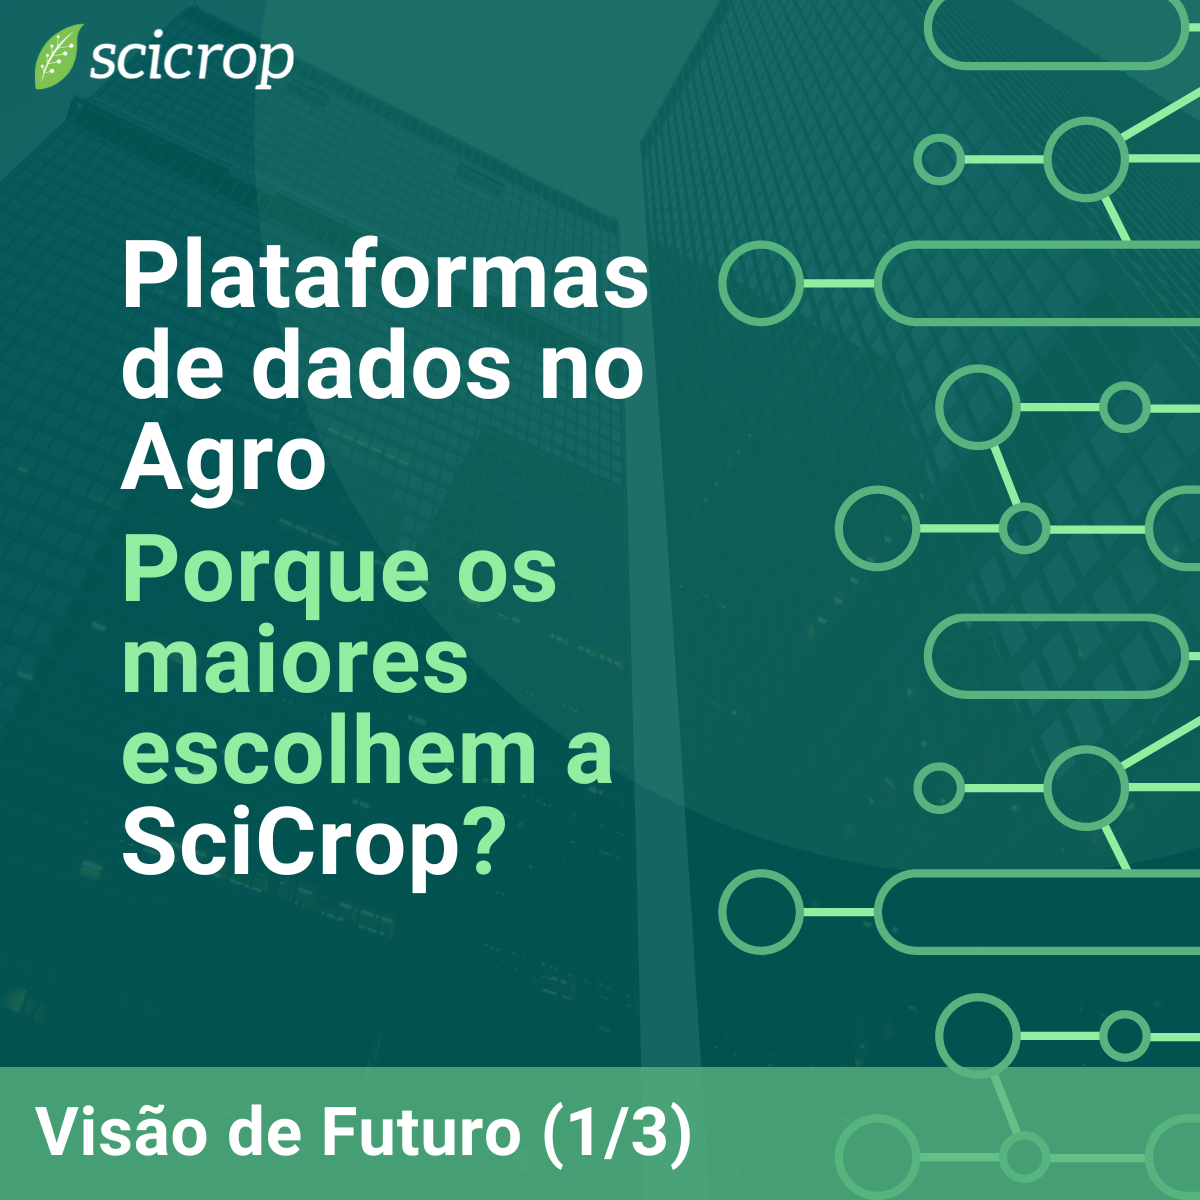 Plataformas de dados no Agro: Visão de Futuro